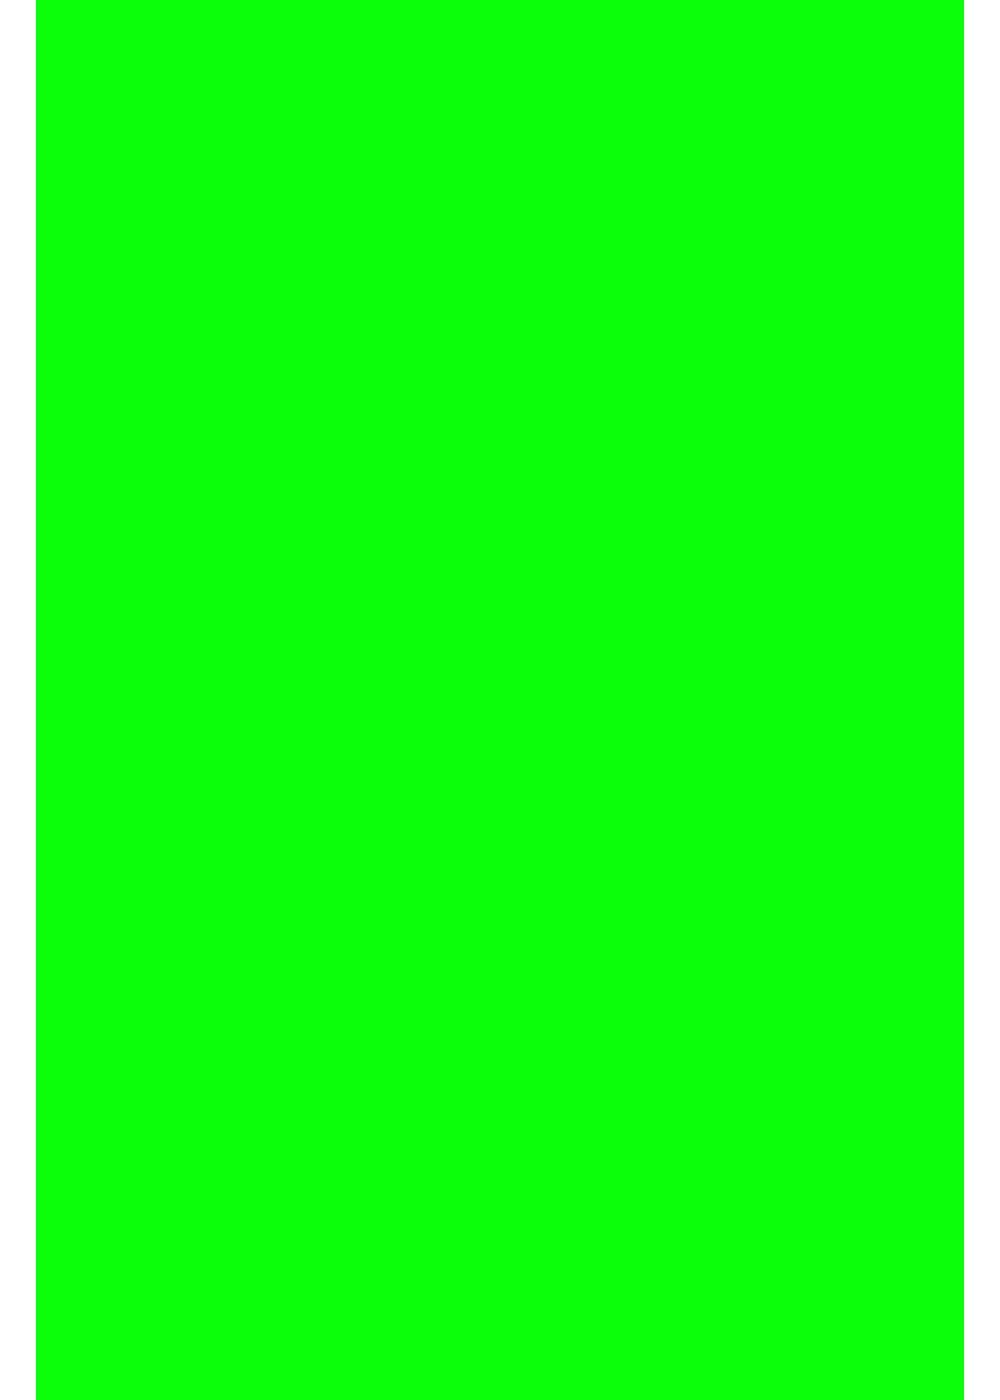 Transferfolie/Textilfolie Plottern A4 Grün Aufbügeln zum zum Hilltop Neon perfekt Transparentpapier -